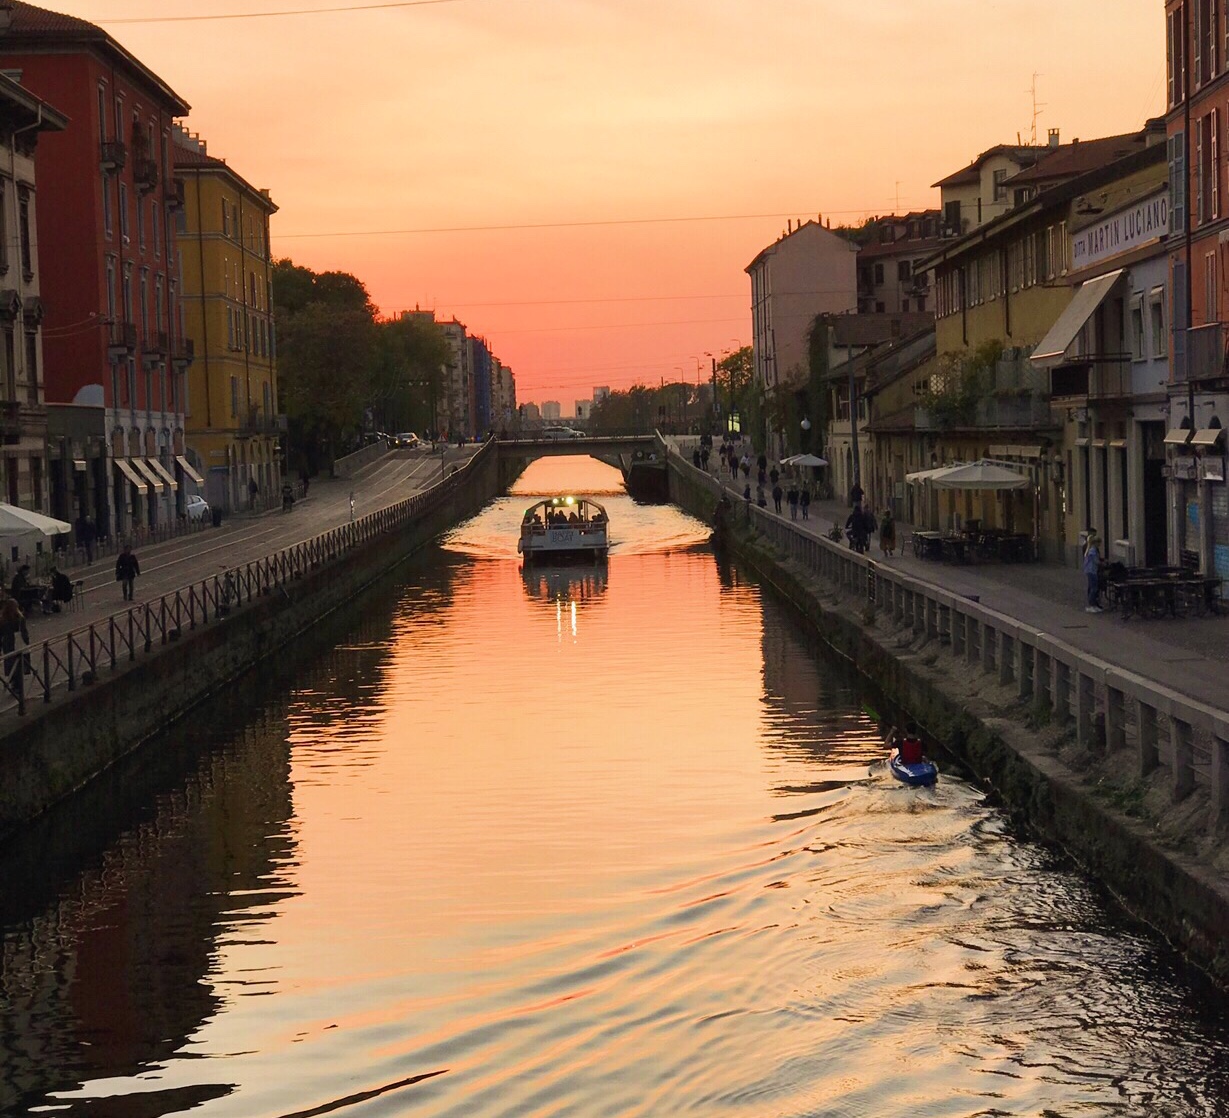 A Milano, il tramonto aiuta a realizzare ogni tuo sogno.